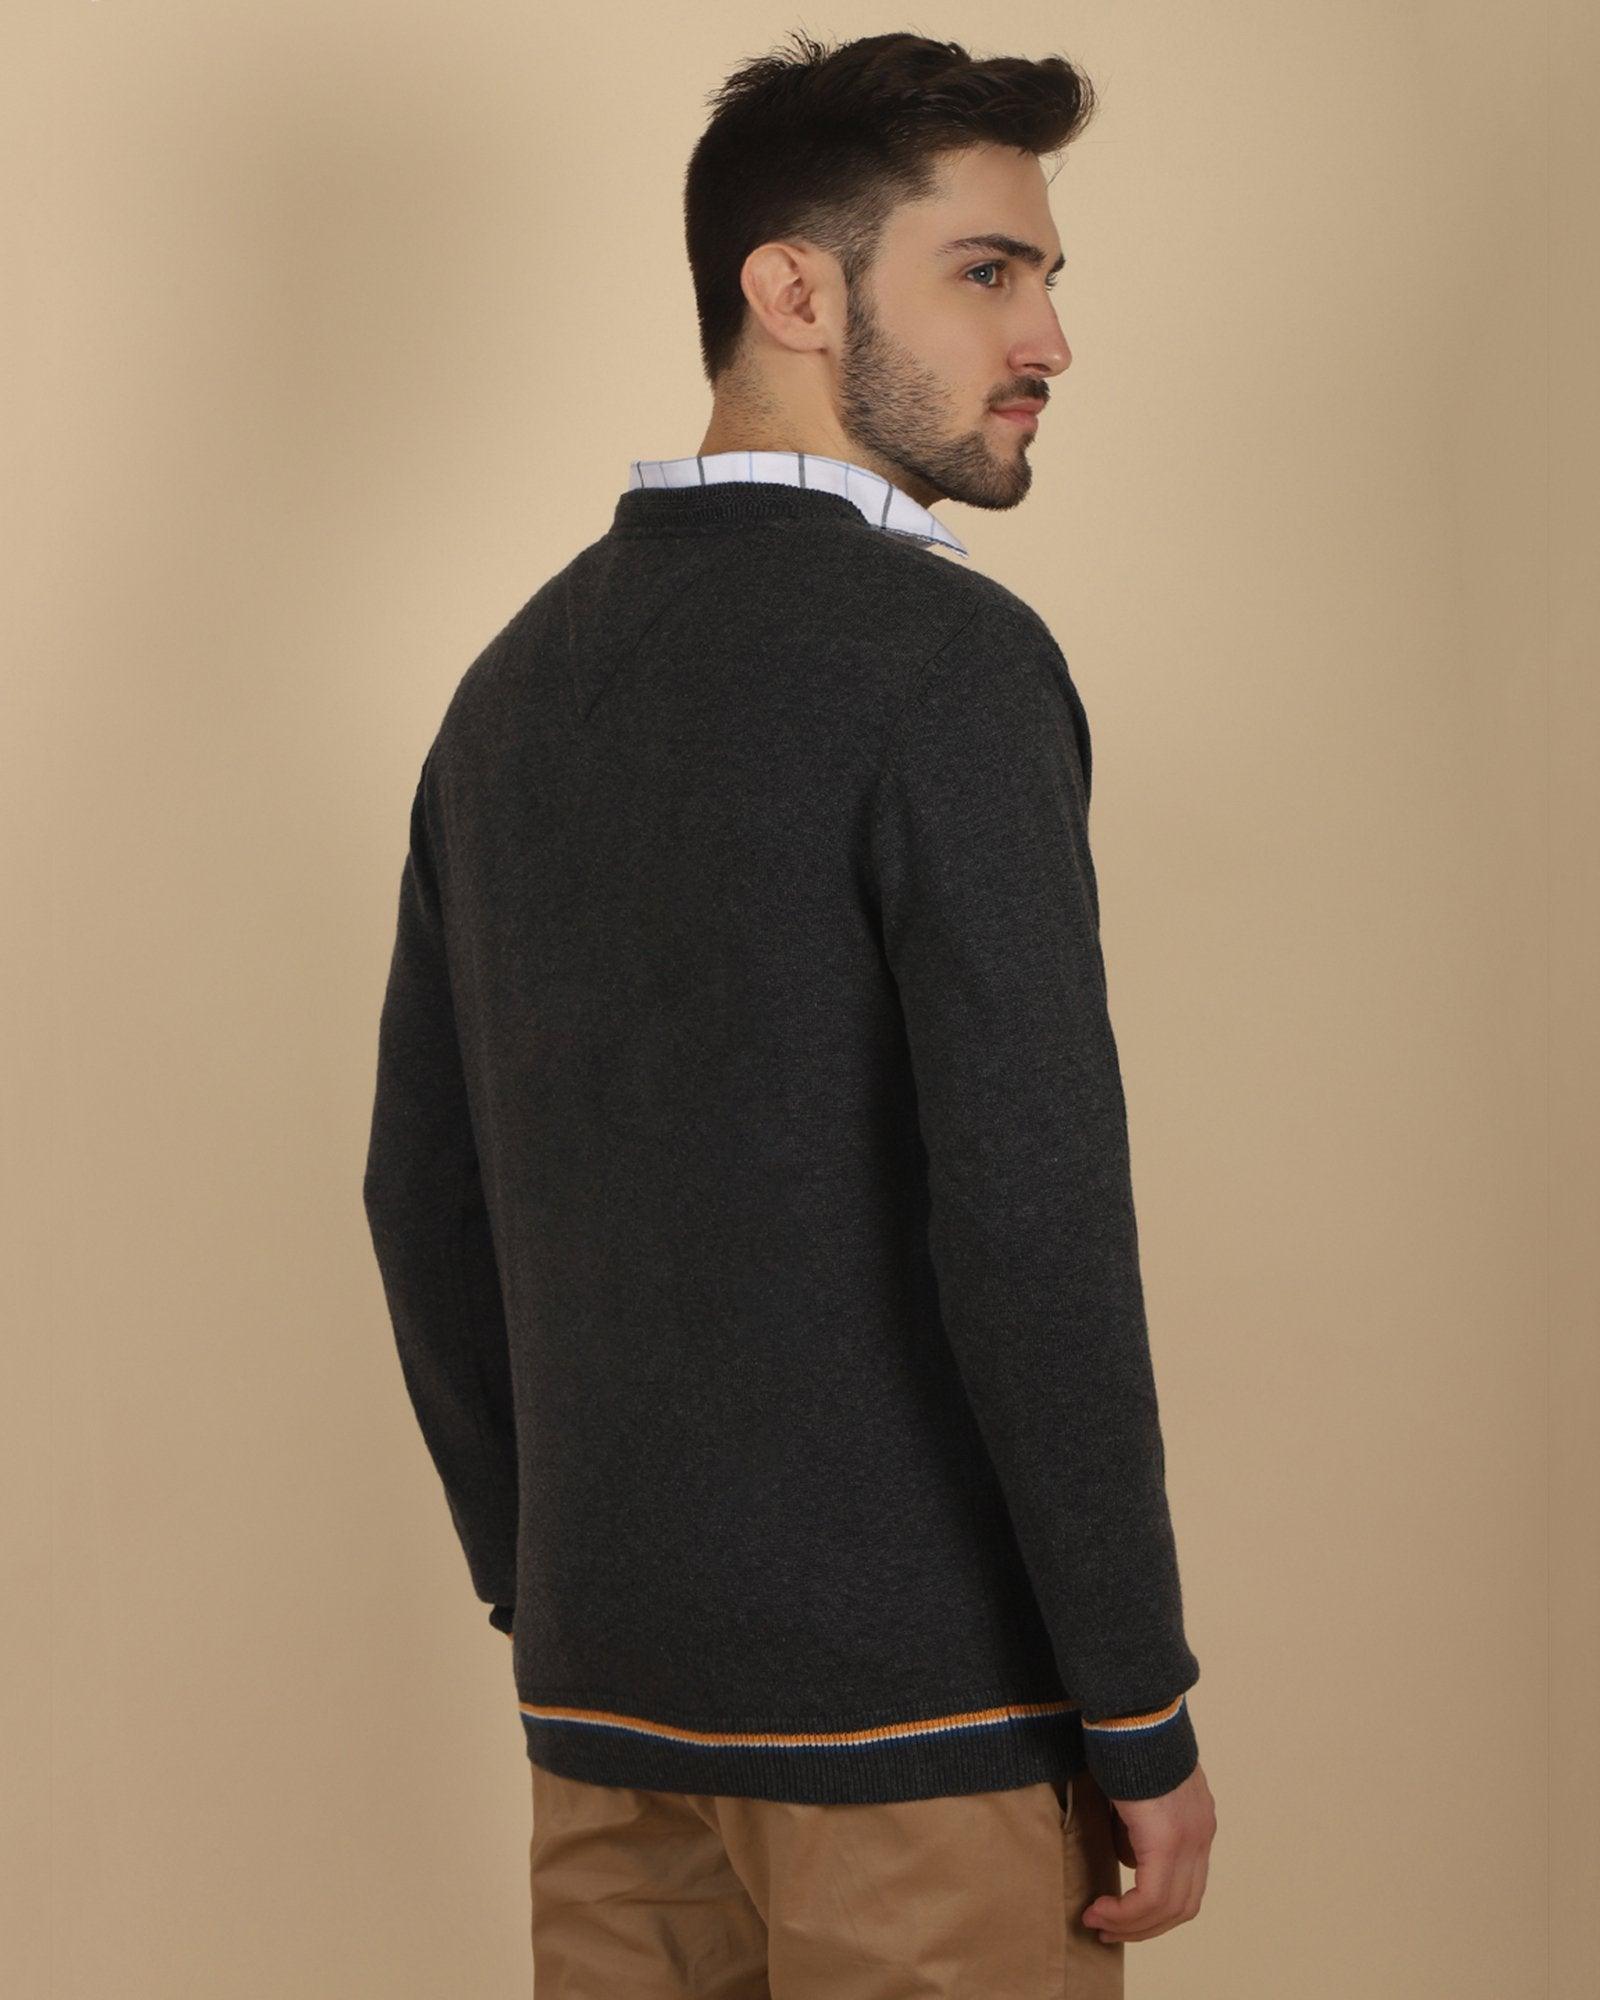 V-Neck Charcoal Melange Solid Sweater - Tees